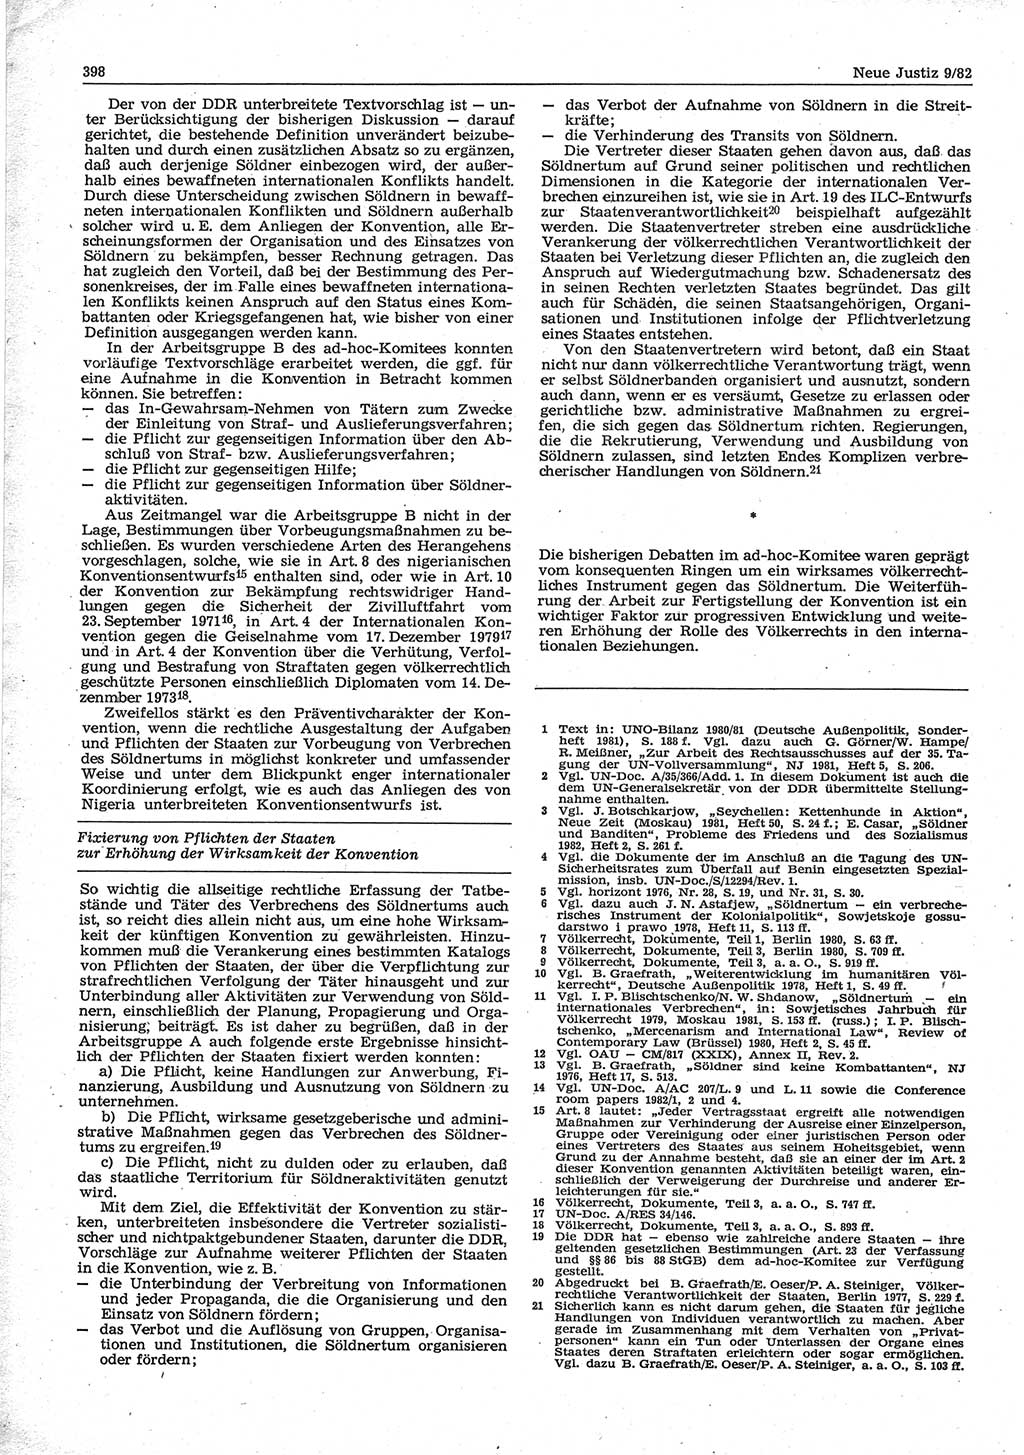 Neue Justiz (NJ), Zeitschrift für sozialistisches Recht und Gesetzlichkeit [Deutsche Demokratische Republik (DDR)], 36. Jahrgang 1982, Seite 398 (NJ DDR 1982, S. 398)